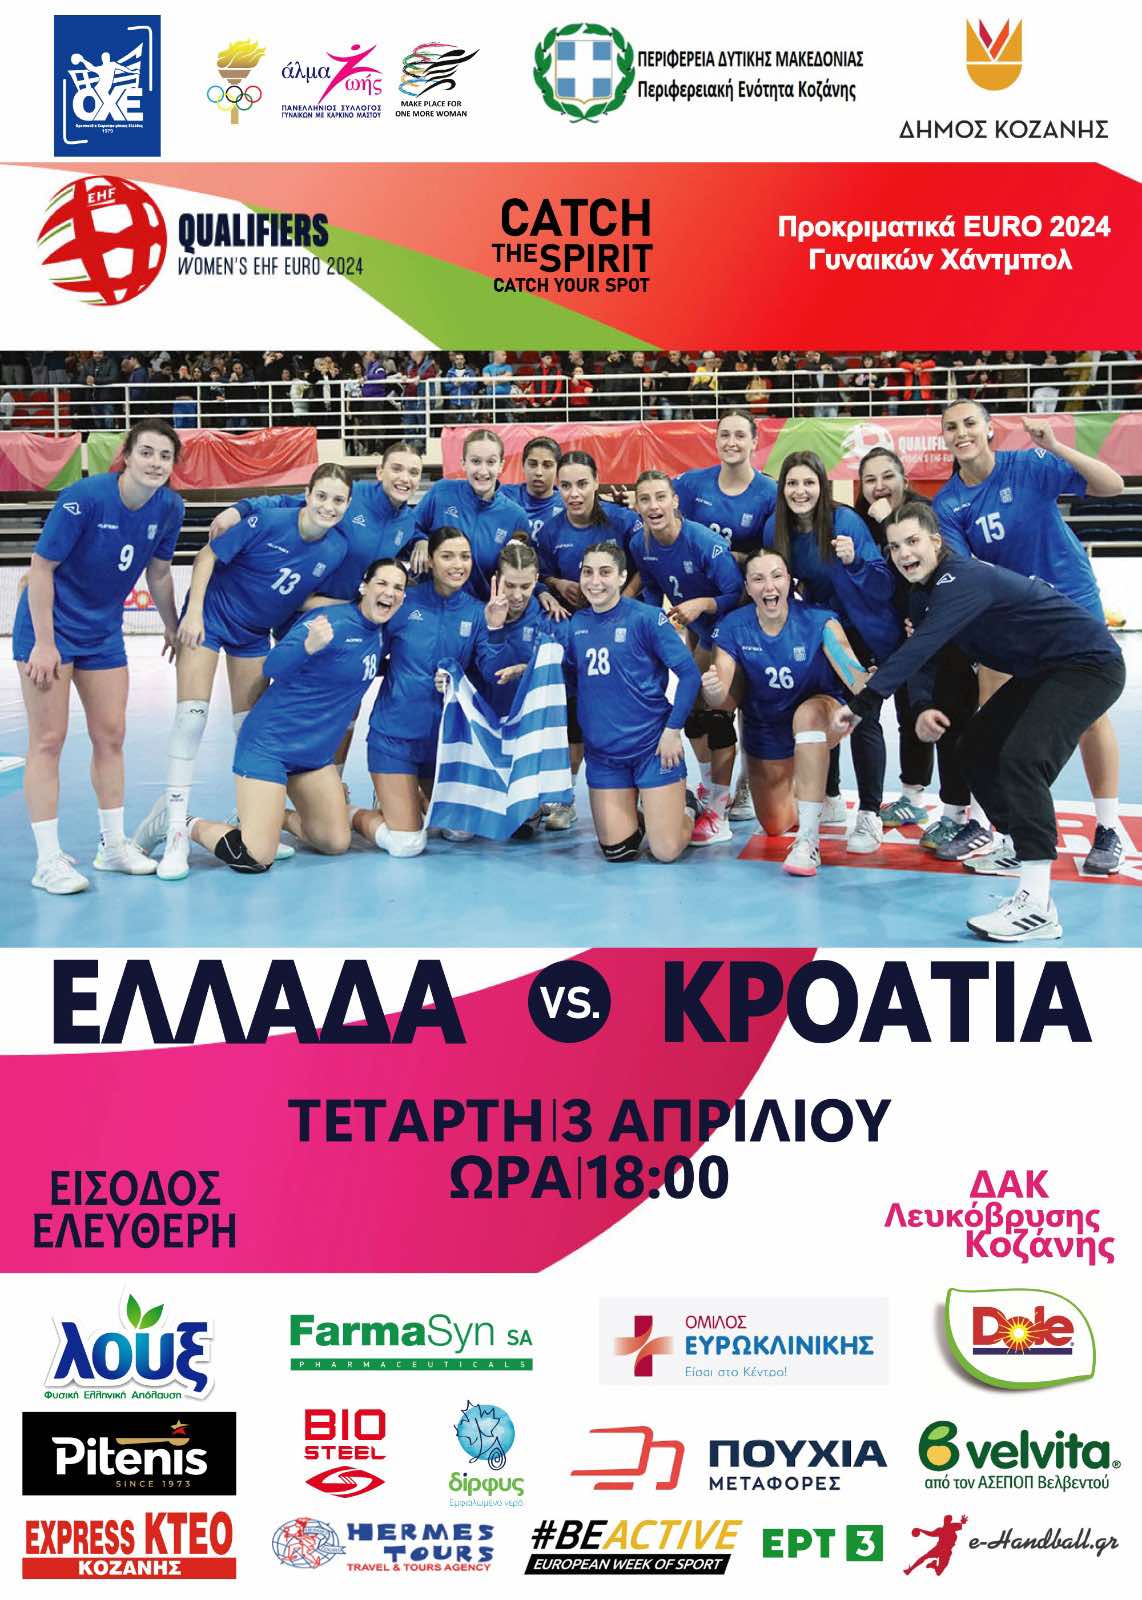 Πανευρωπαϊκός αγώνας χάντμπολ Ελλάδα – Κροατία στο ΔΑΚ, με ελεύθερη είσοδο